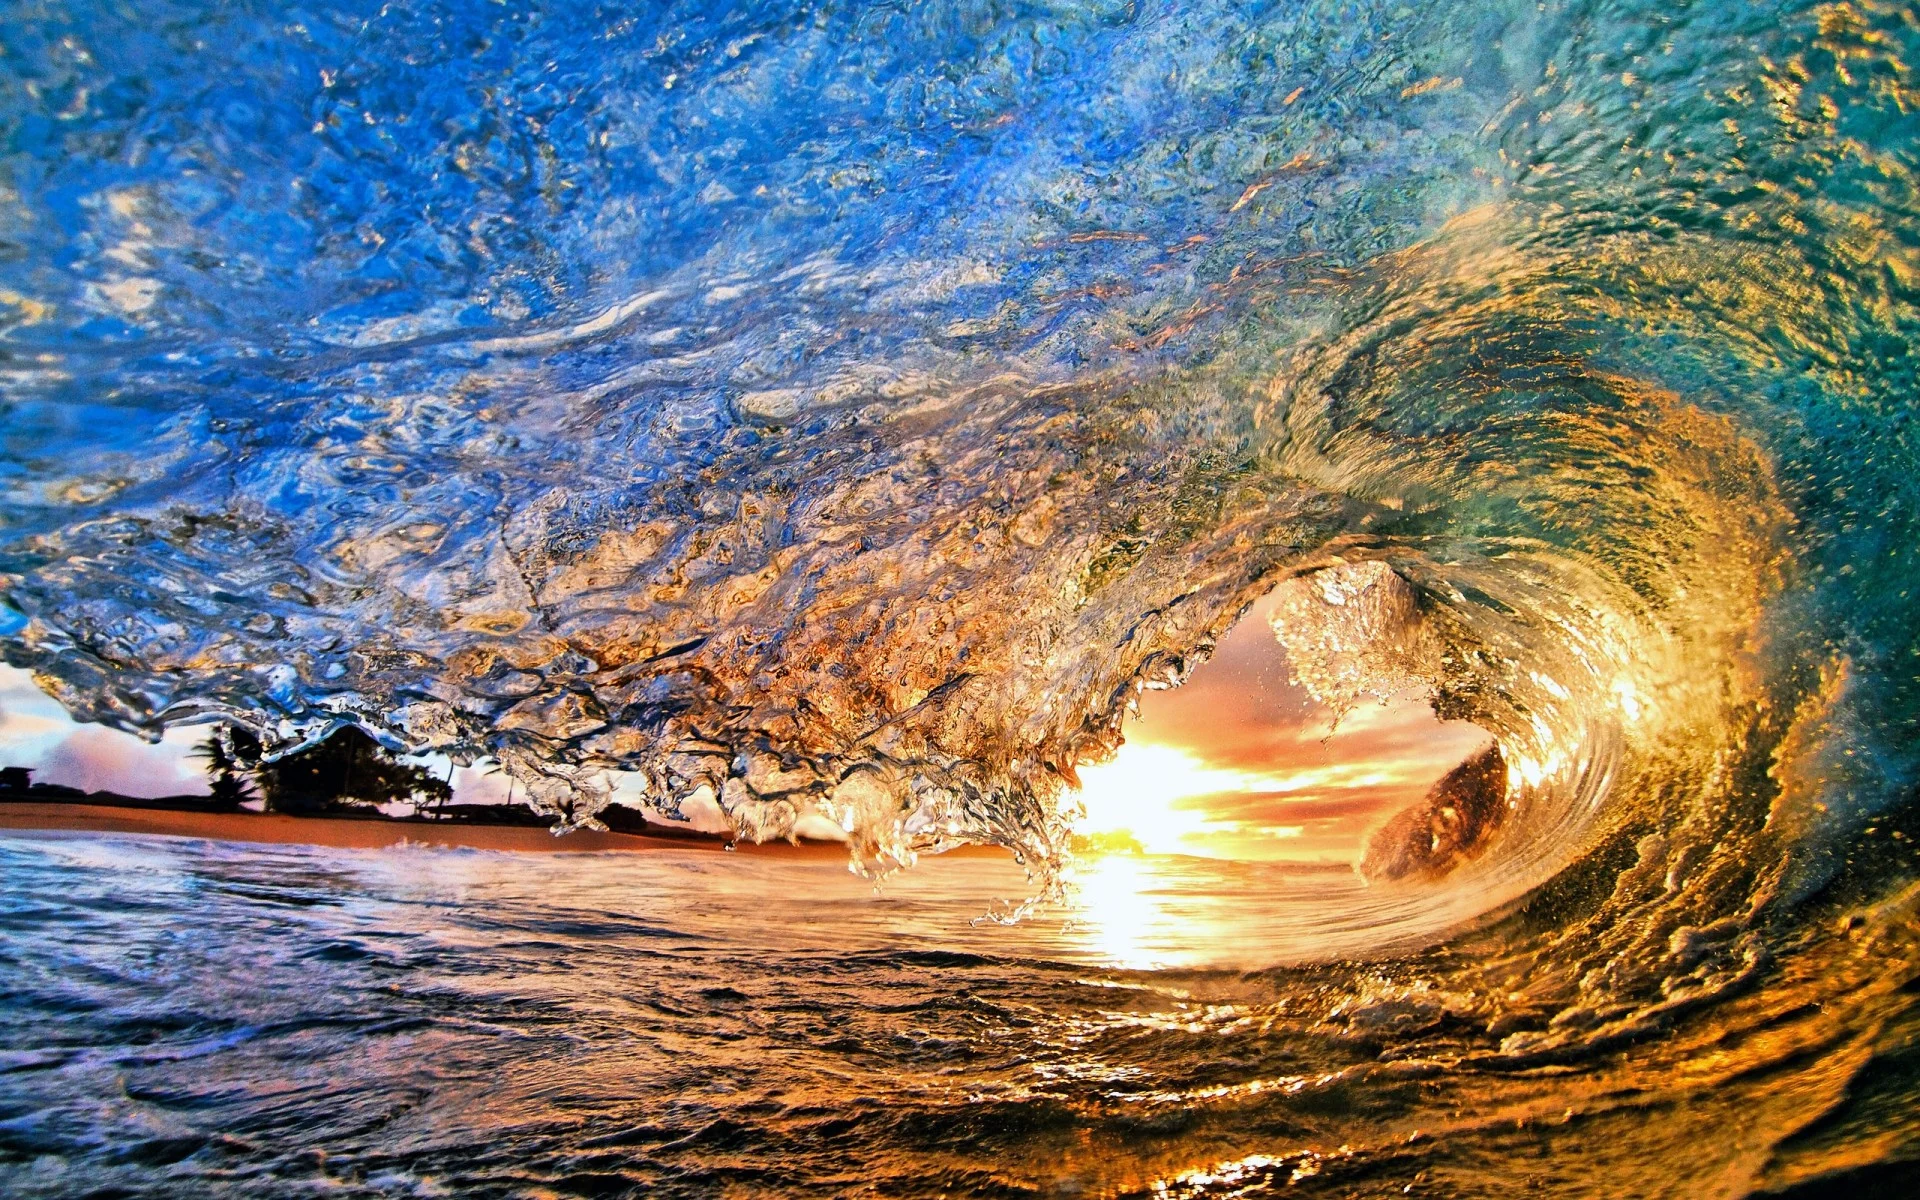 Best Ocean Wave Wallpaper For Desktop